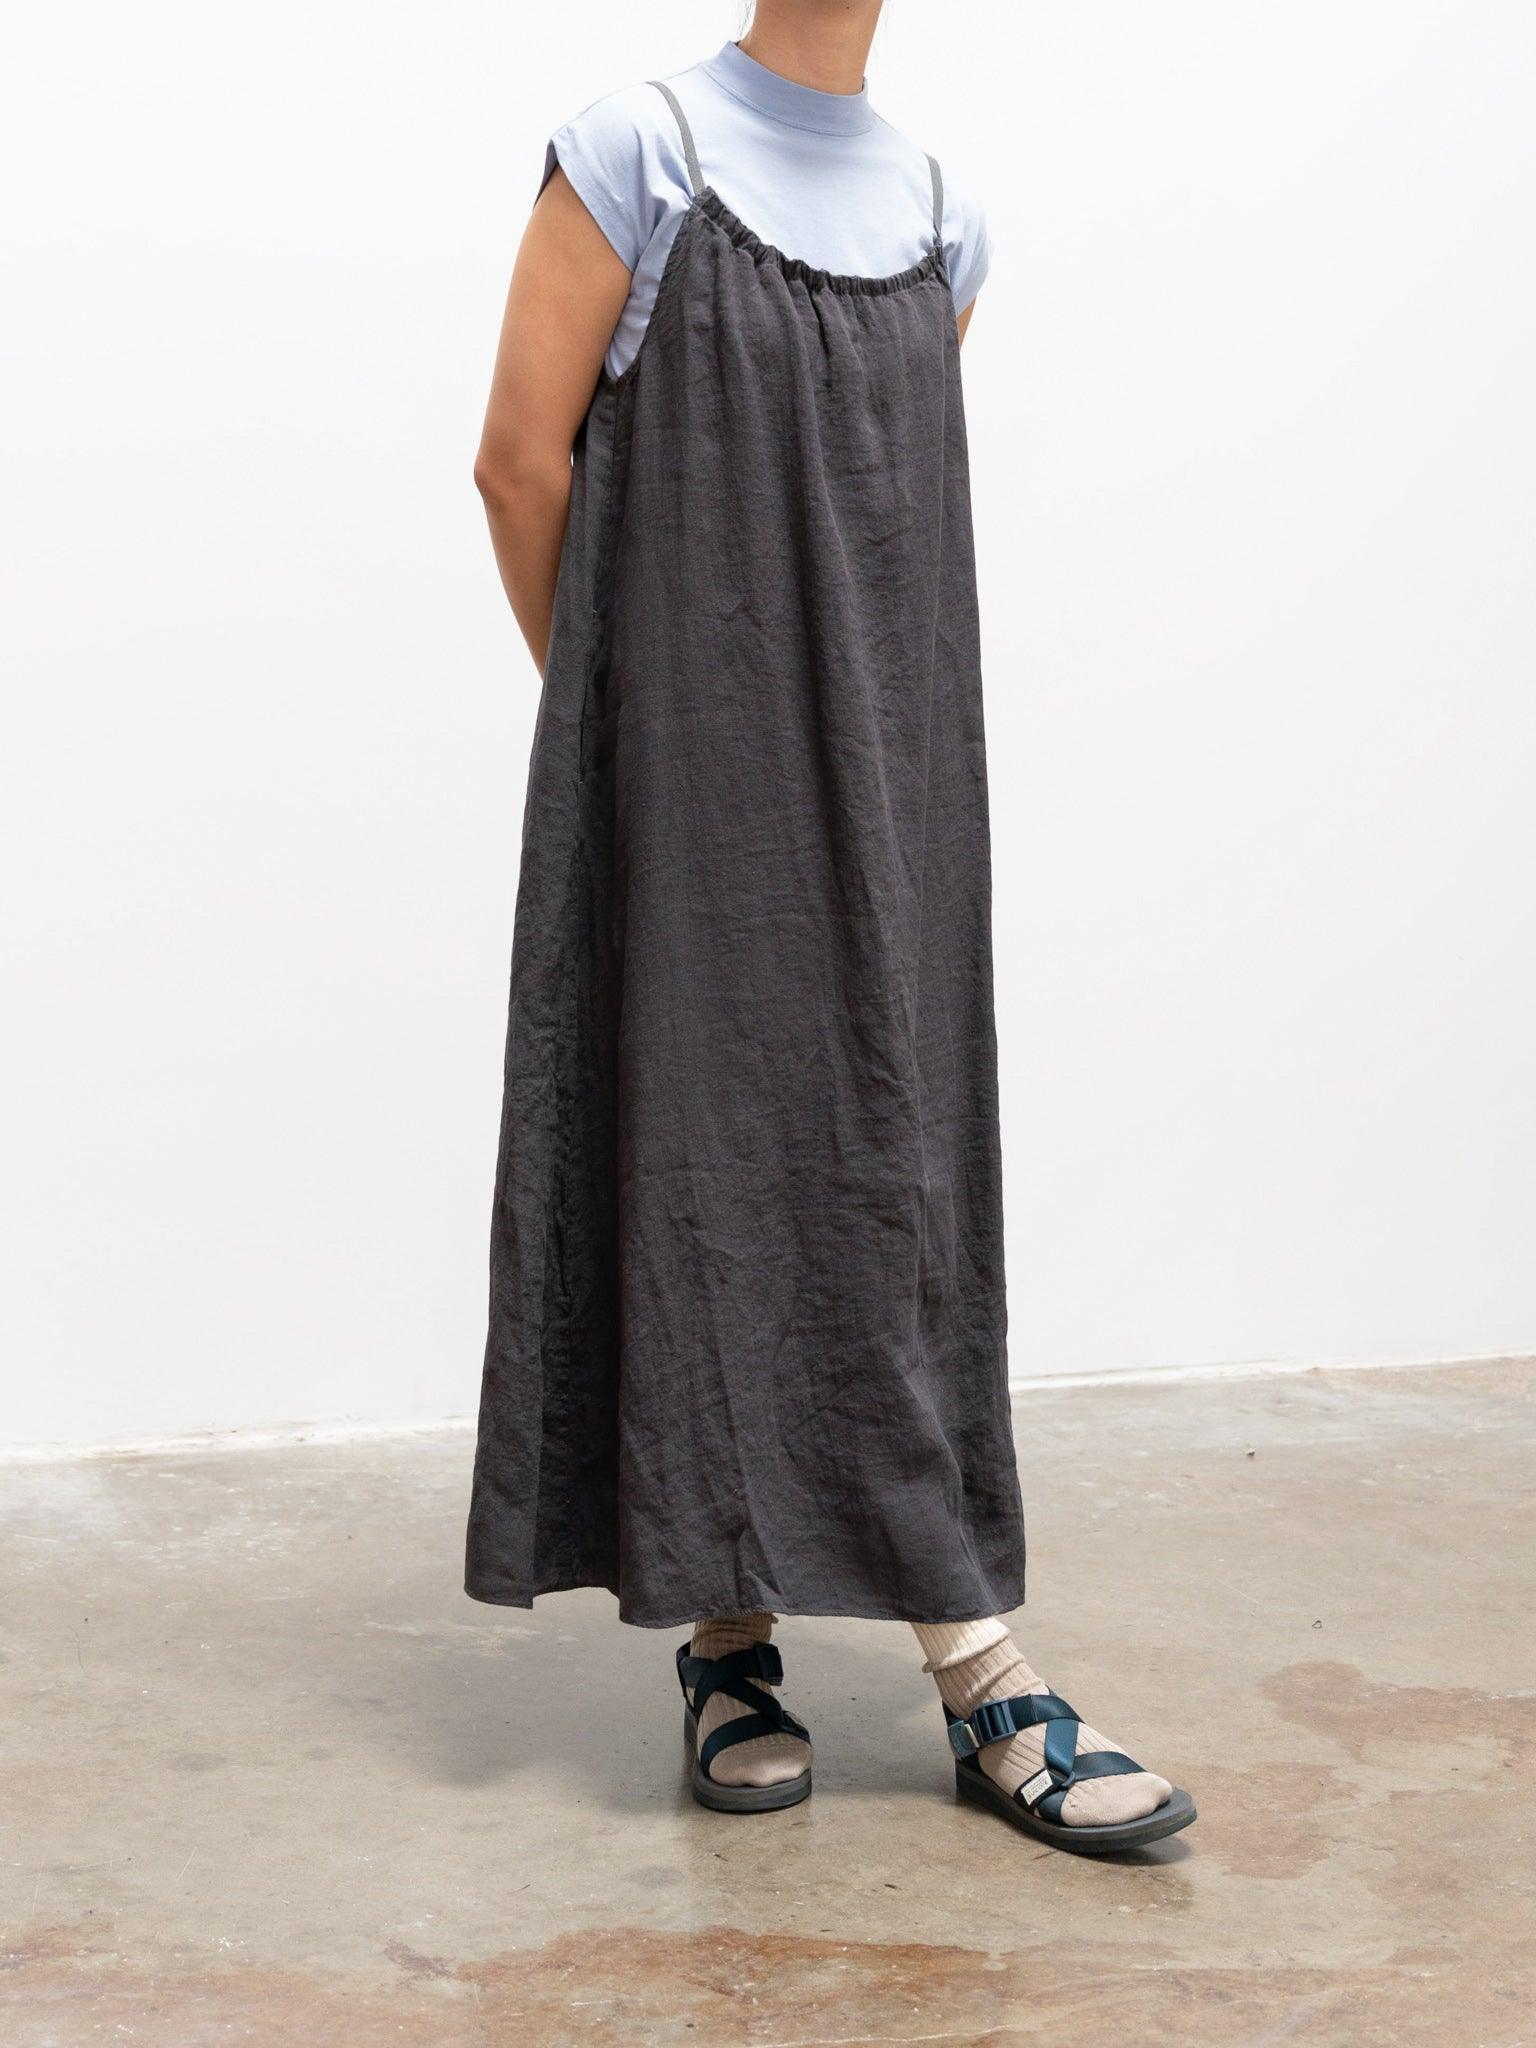 Namu Shop - Maillot Linen Camisole Dress - Smoke Gray